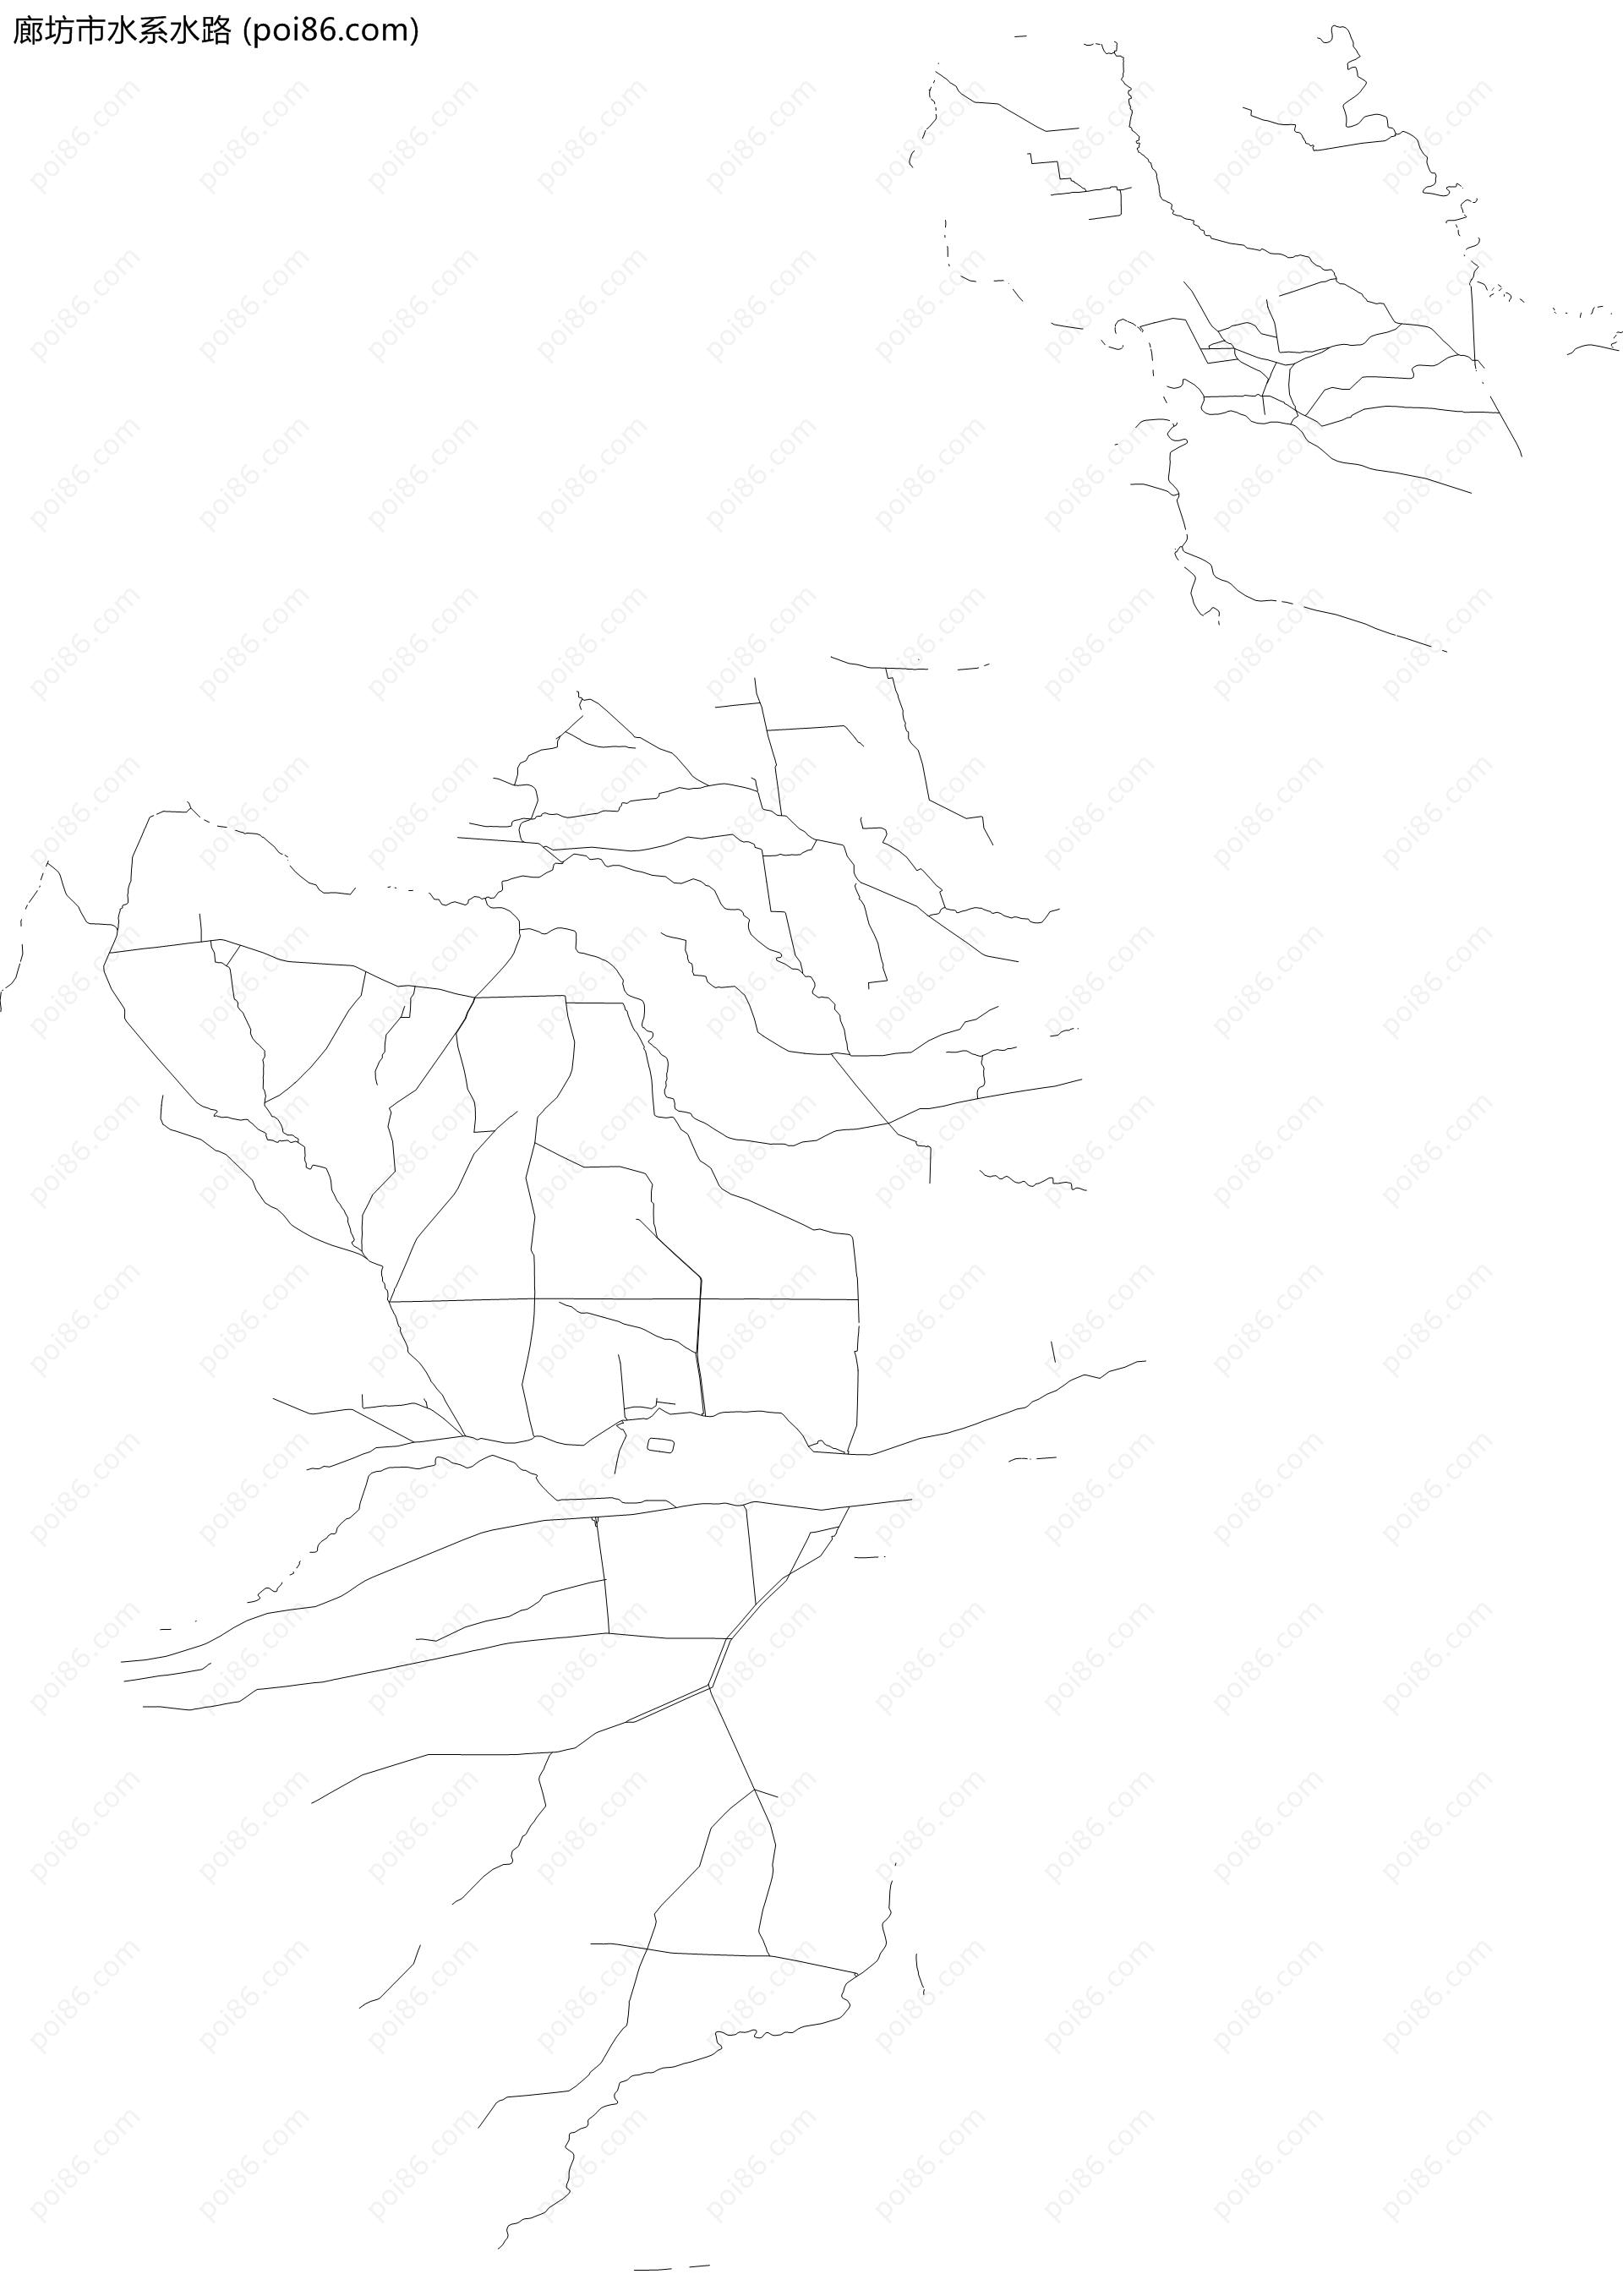 廊坊市水系水路地图